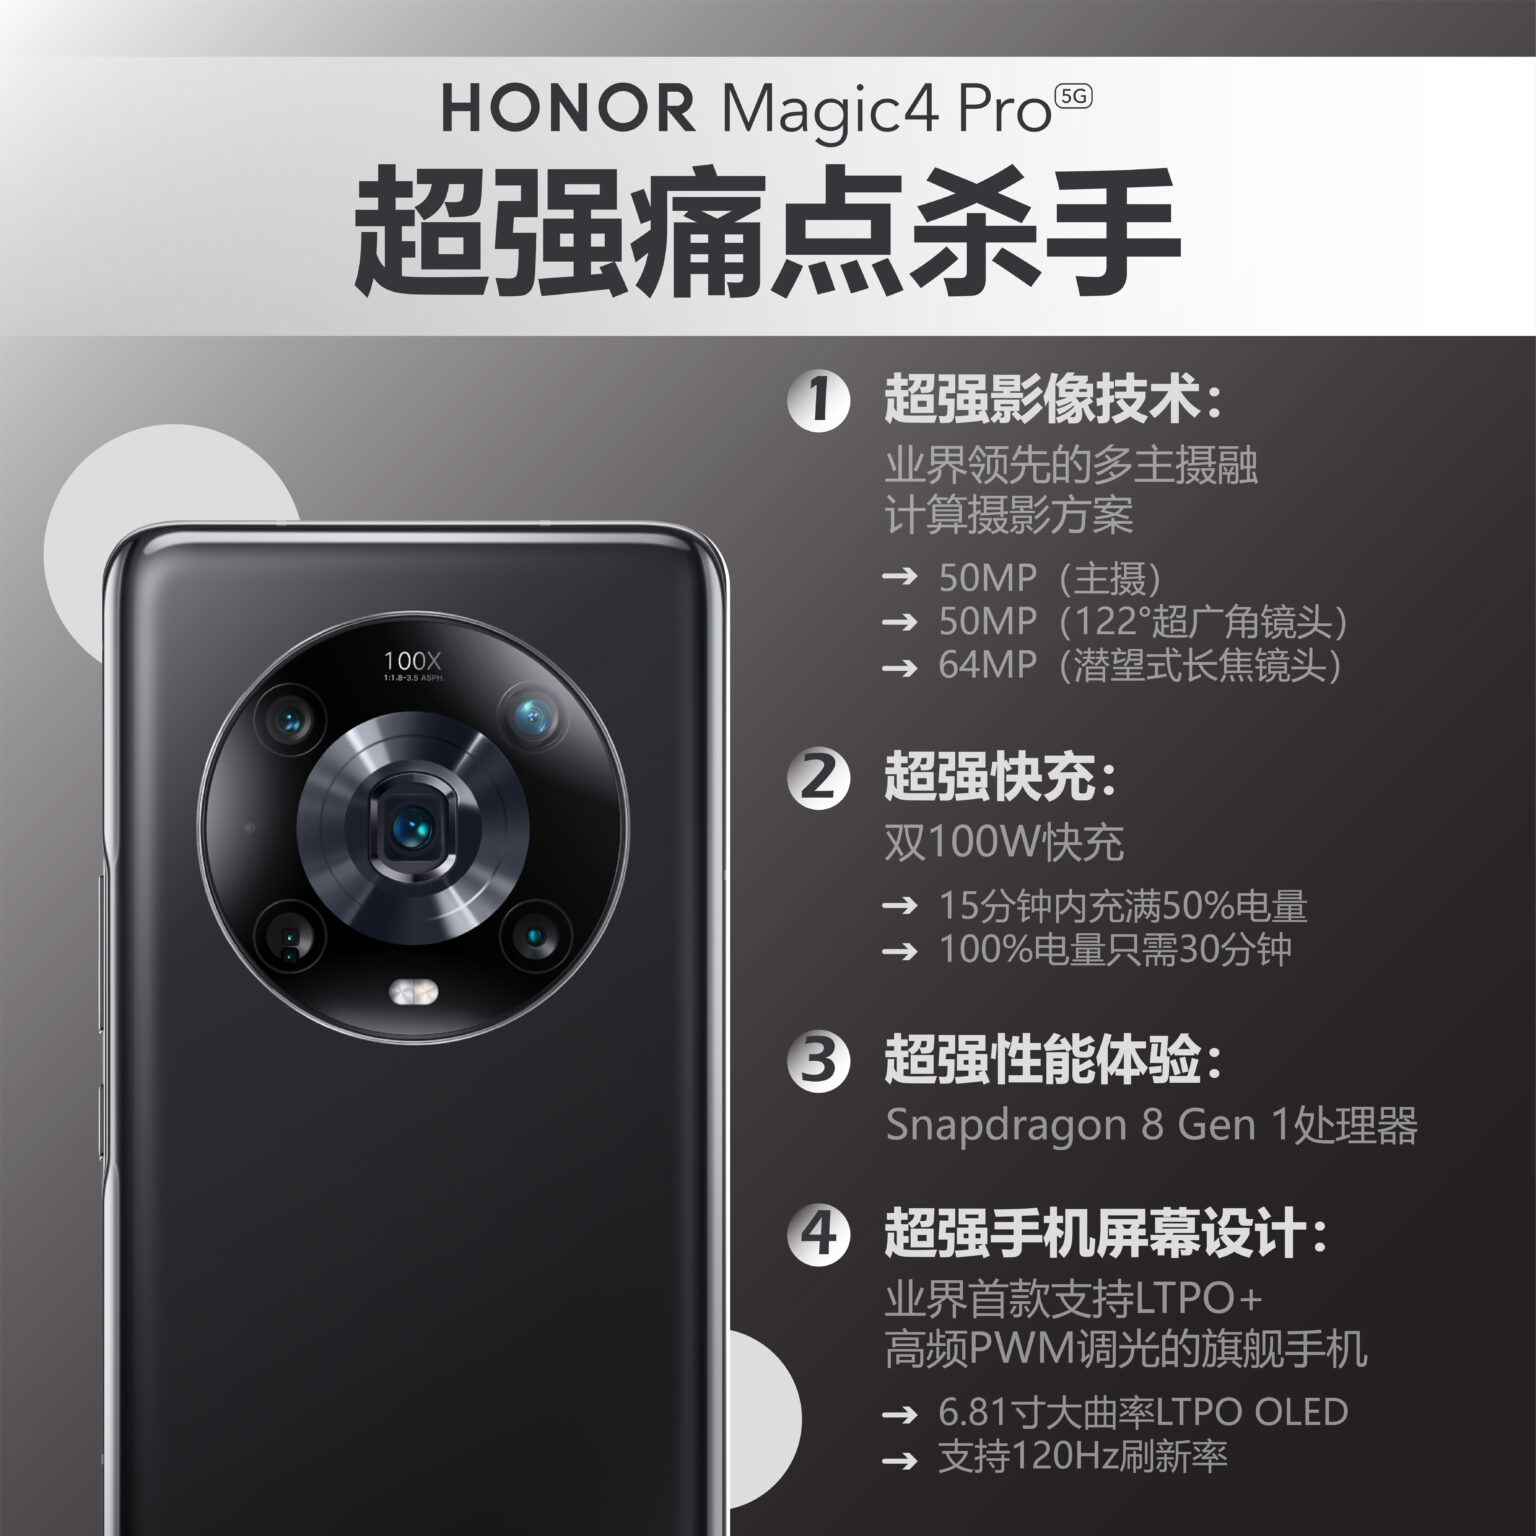 HONOR Magic4 Pro CHI Social Post 1 1536x1536 1